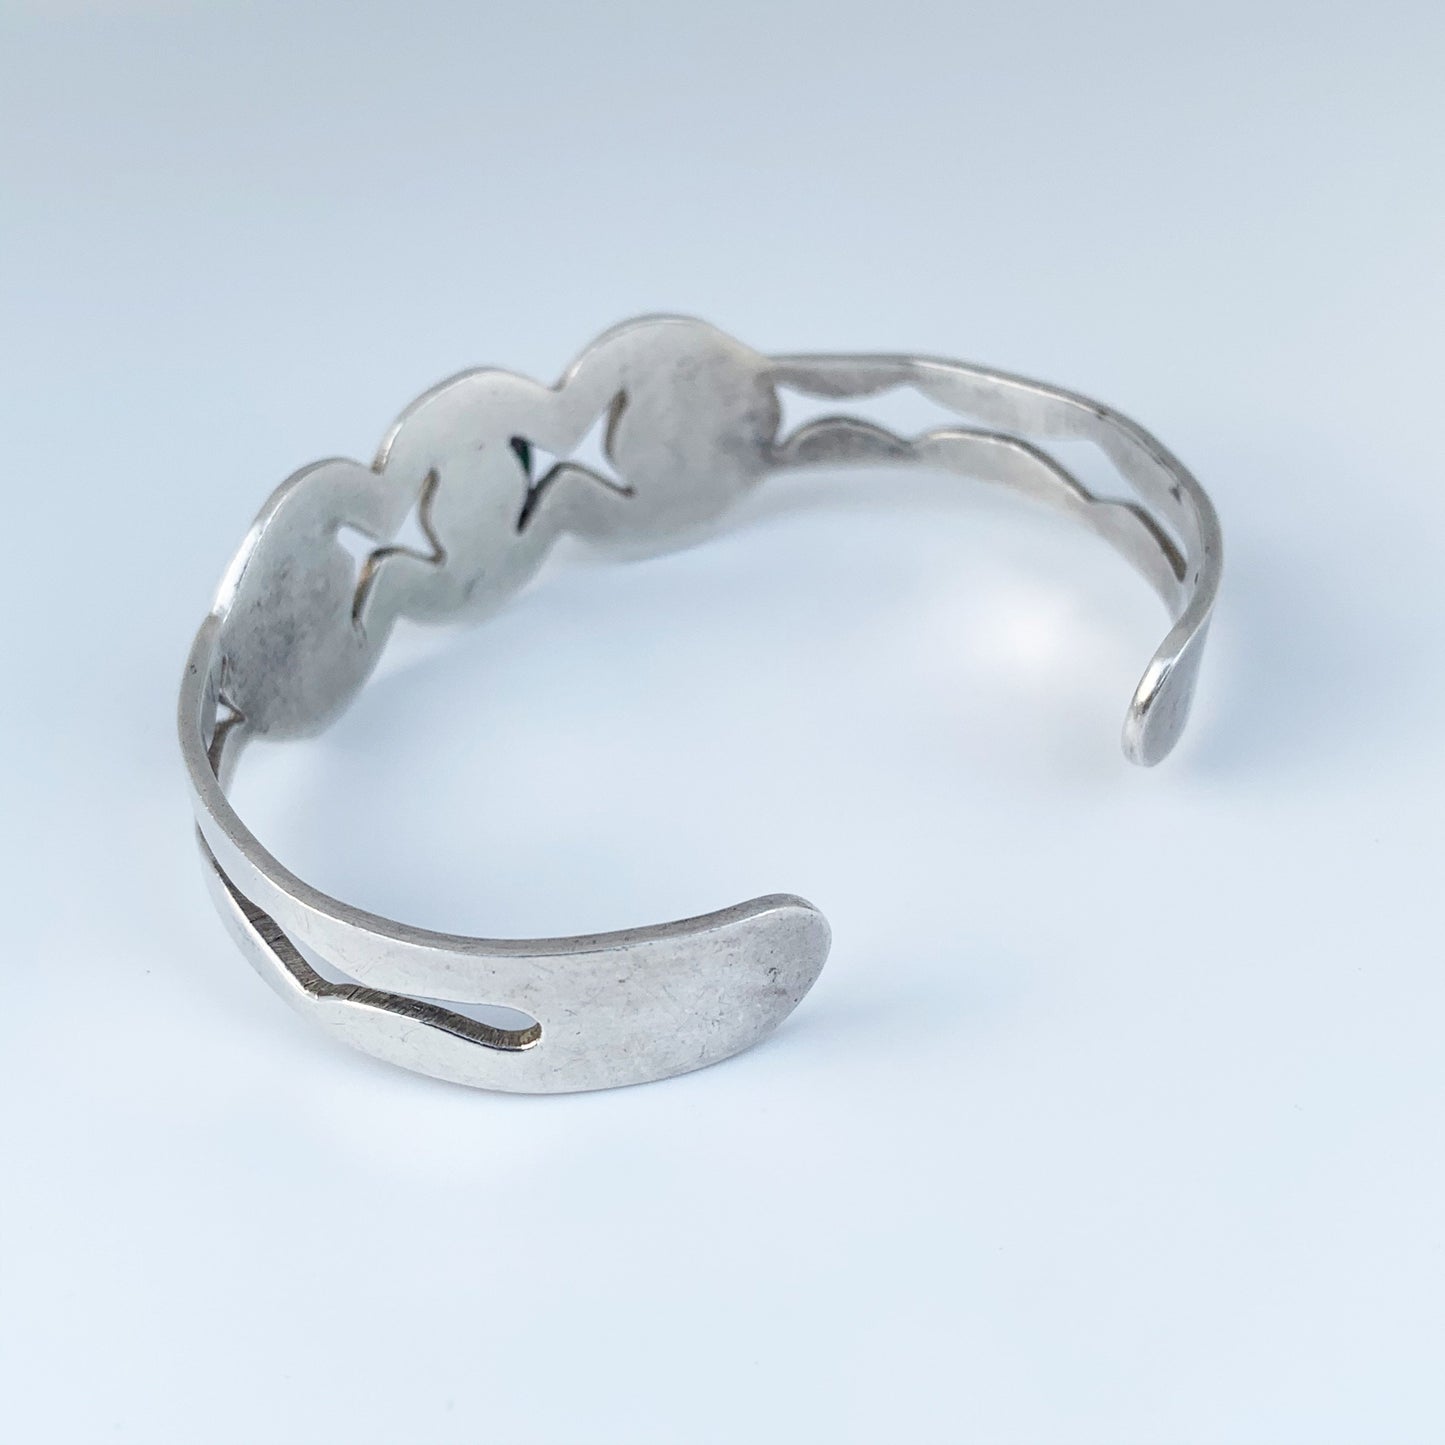 Vintage Mexican Silver Malachite Cuff Bracelet | Malachite Three Stone Cuff